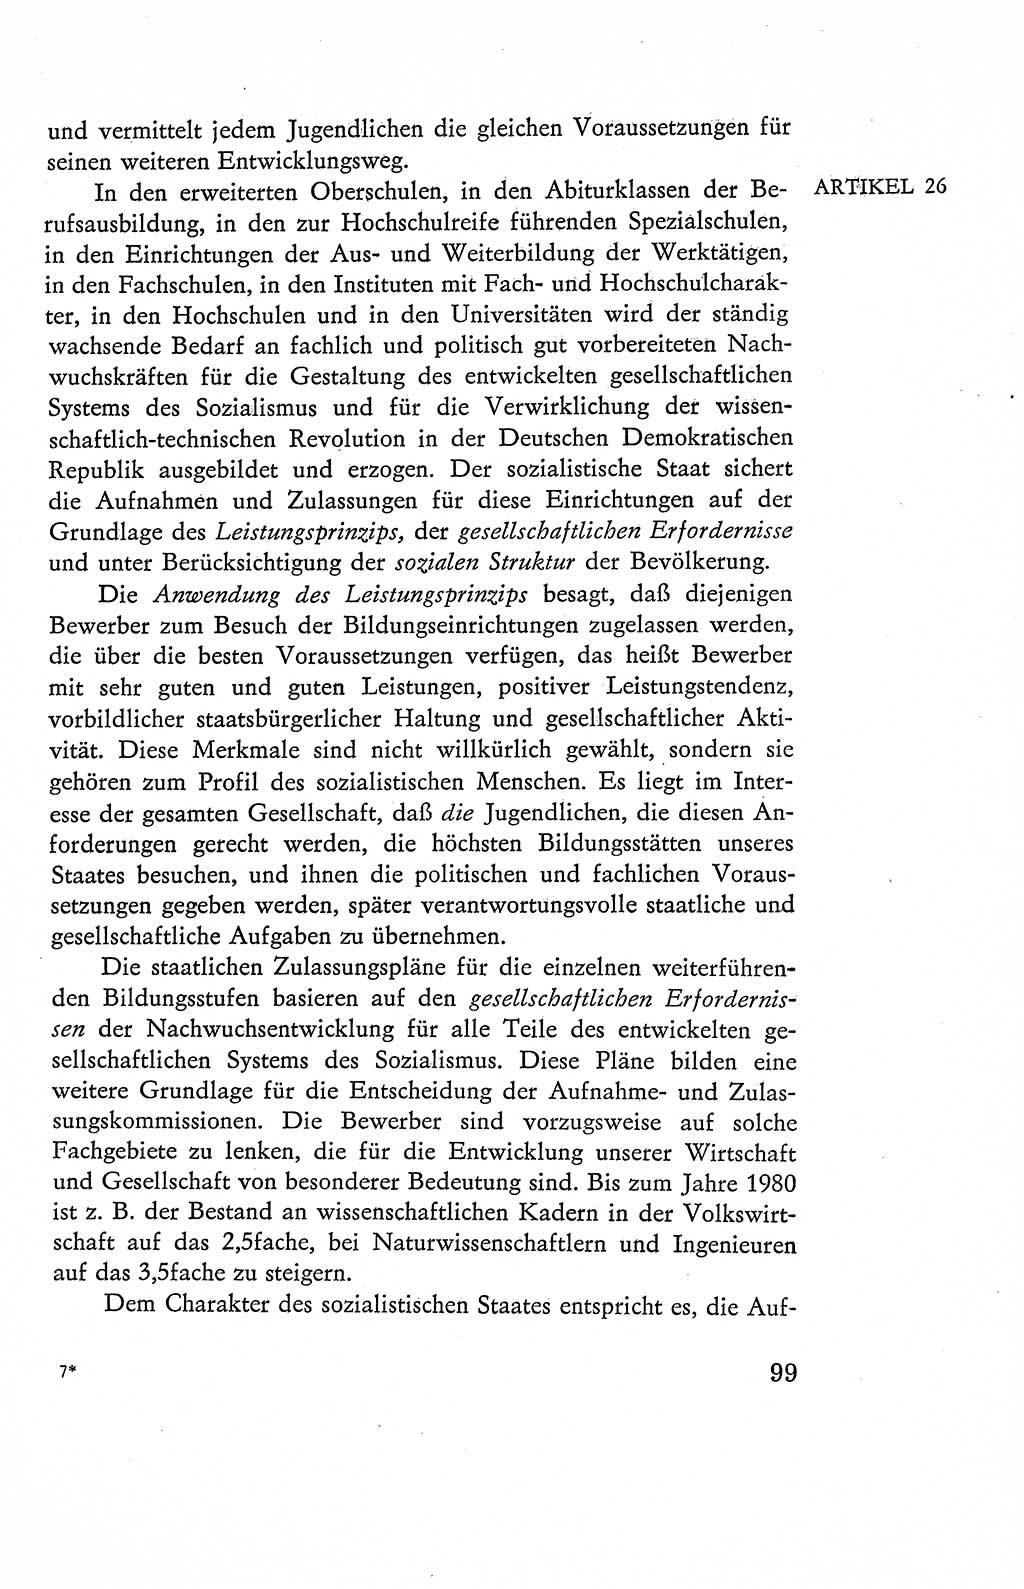 Verfassung der Deutschen Demokratischen Republik (DDR), Dokumente, Kommentar 1969, Band 2, Seite 99 (Verf. DDR Dok. Komm. 1969, Bd. 2, S. 99)